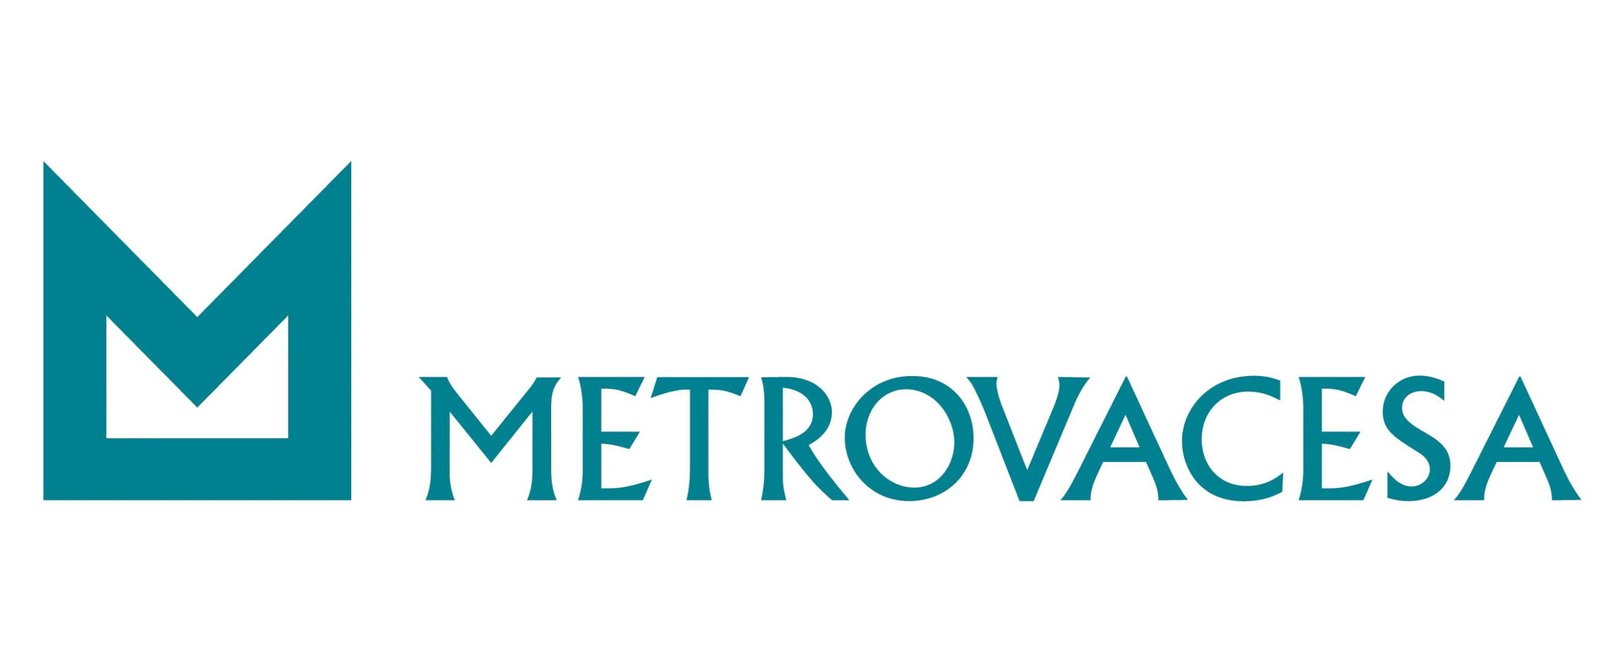 Metrovacesa vende casas en el metaverso